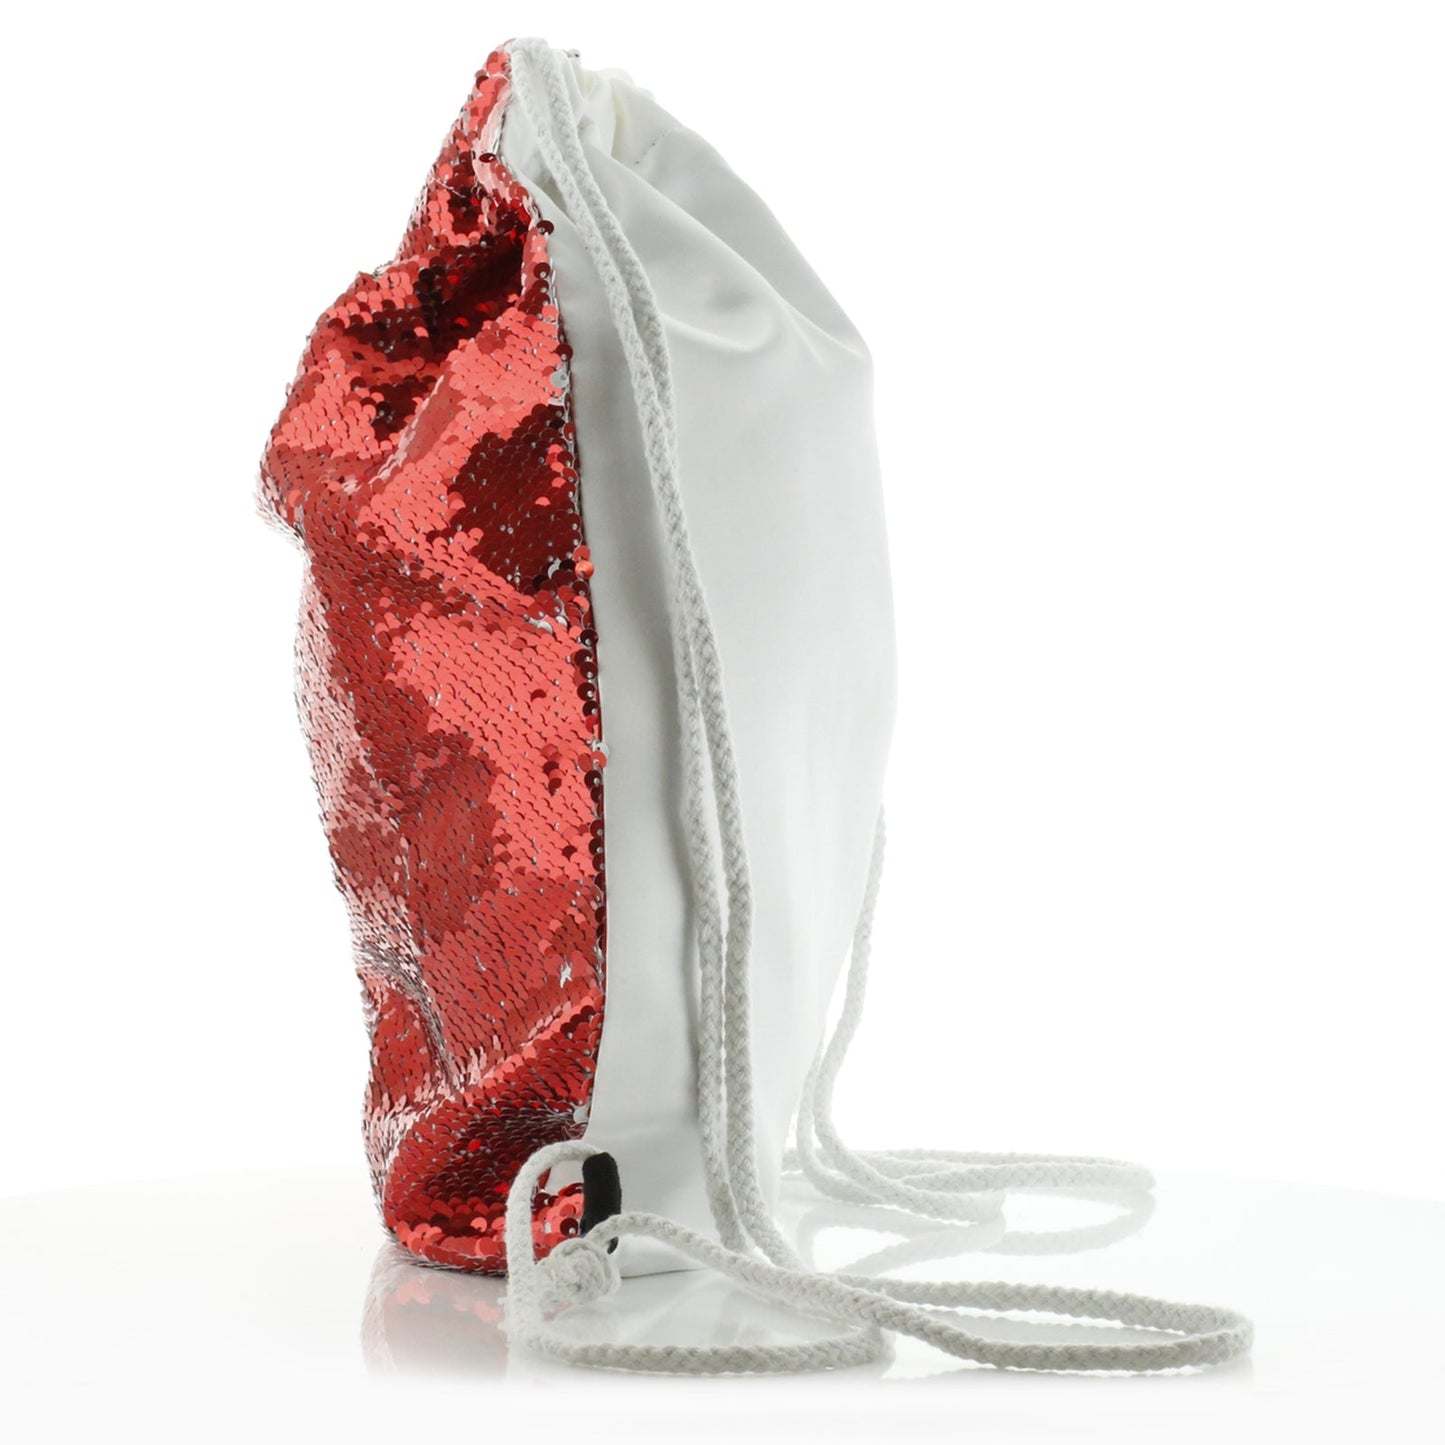 Personalisierter Pailletten-Rucksack mit Kordelzug, grauem Kaninchen-Blumenkranz und niedlichem Text